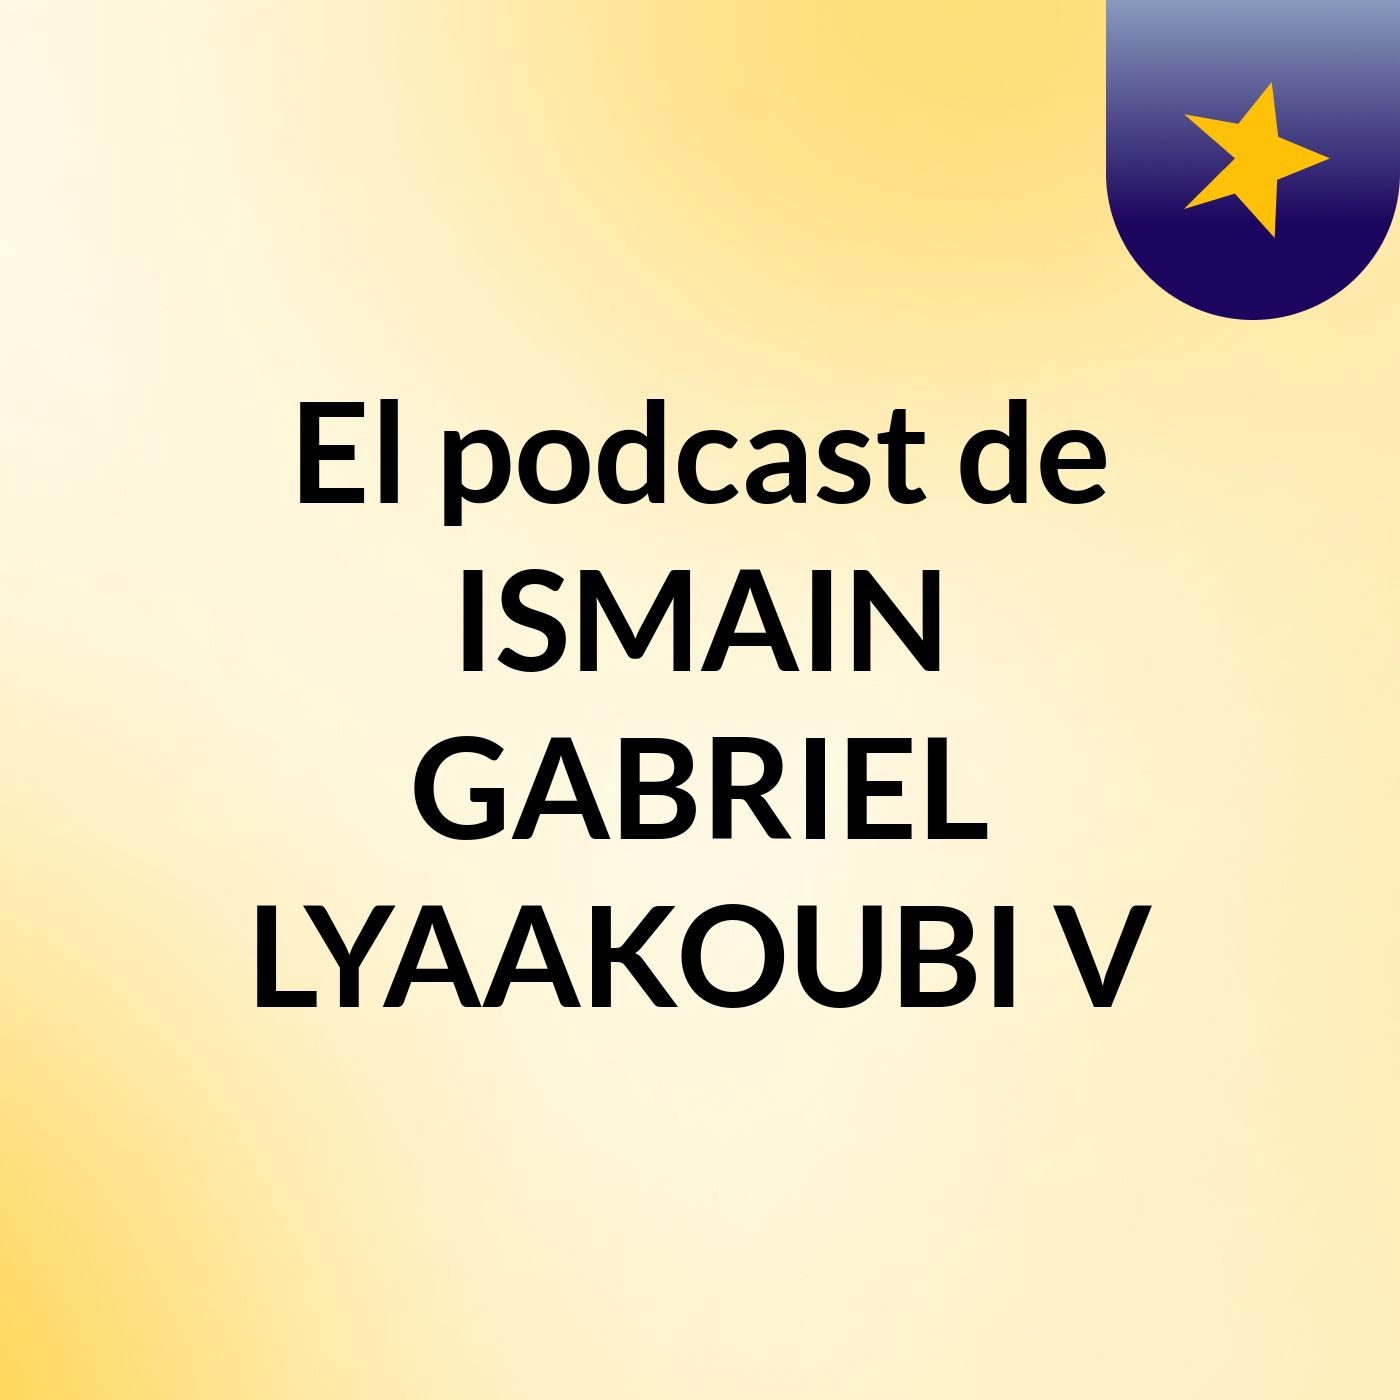 El podcast de ISMAIN GABRIEL LYAAKOUBI V